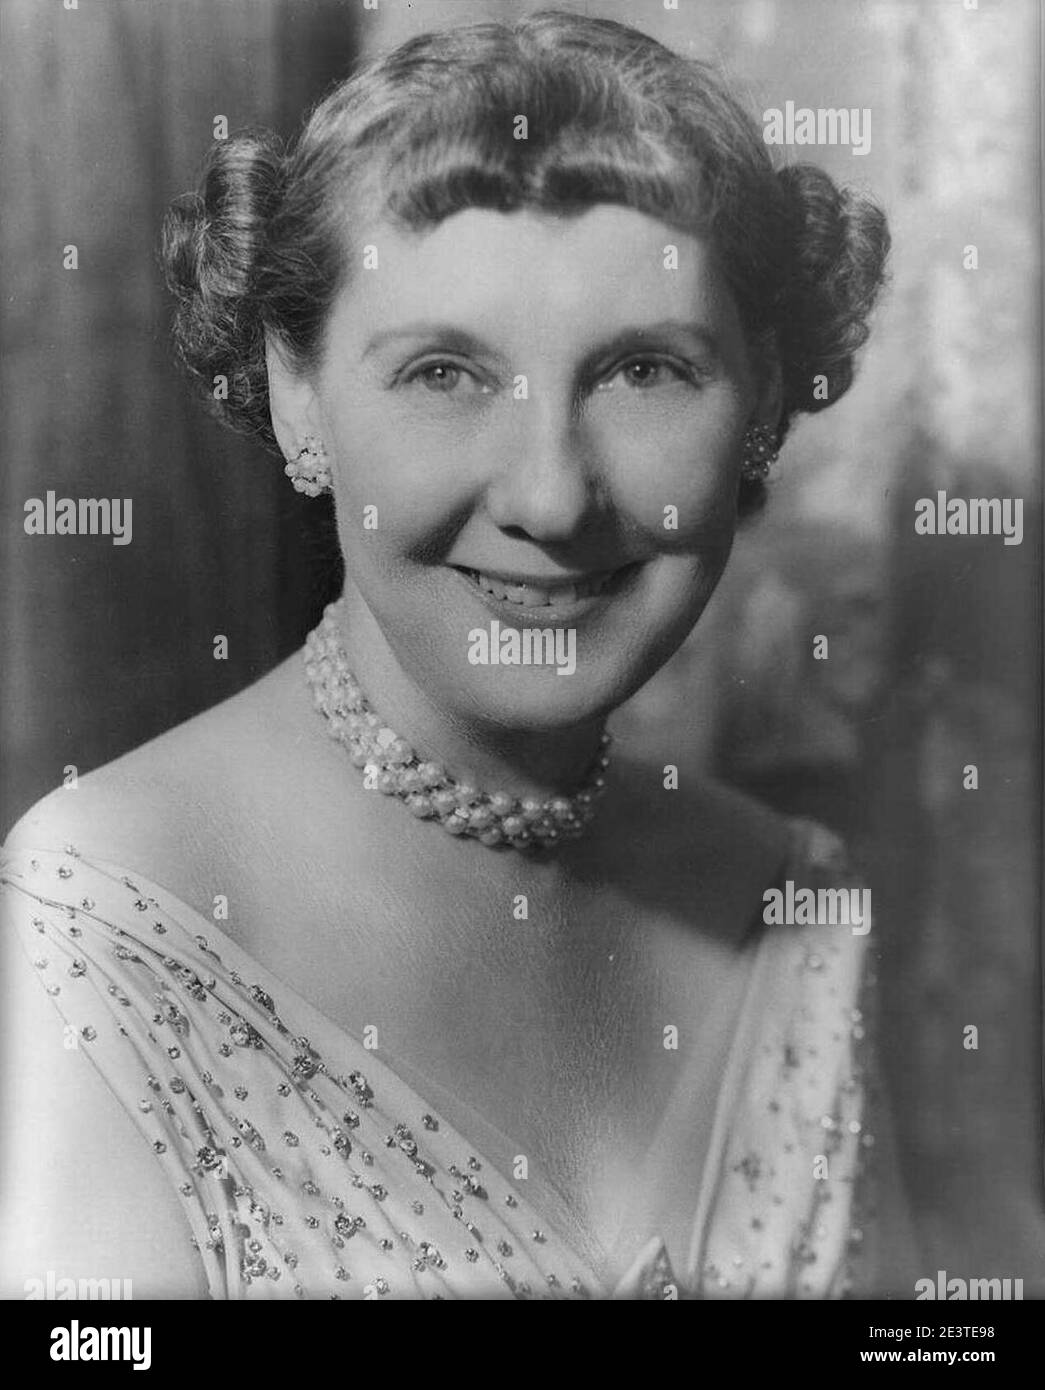 Mamie Eisenhower. Stock Photo